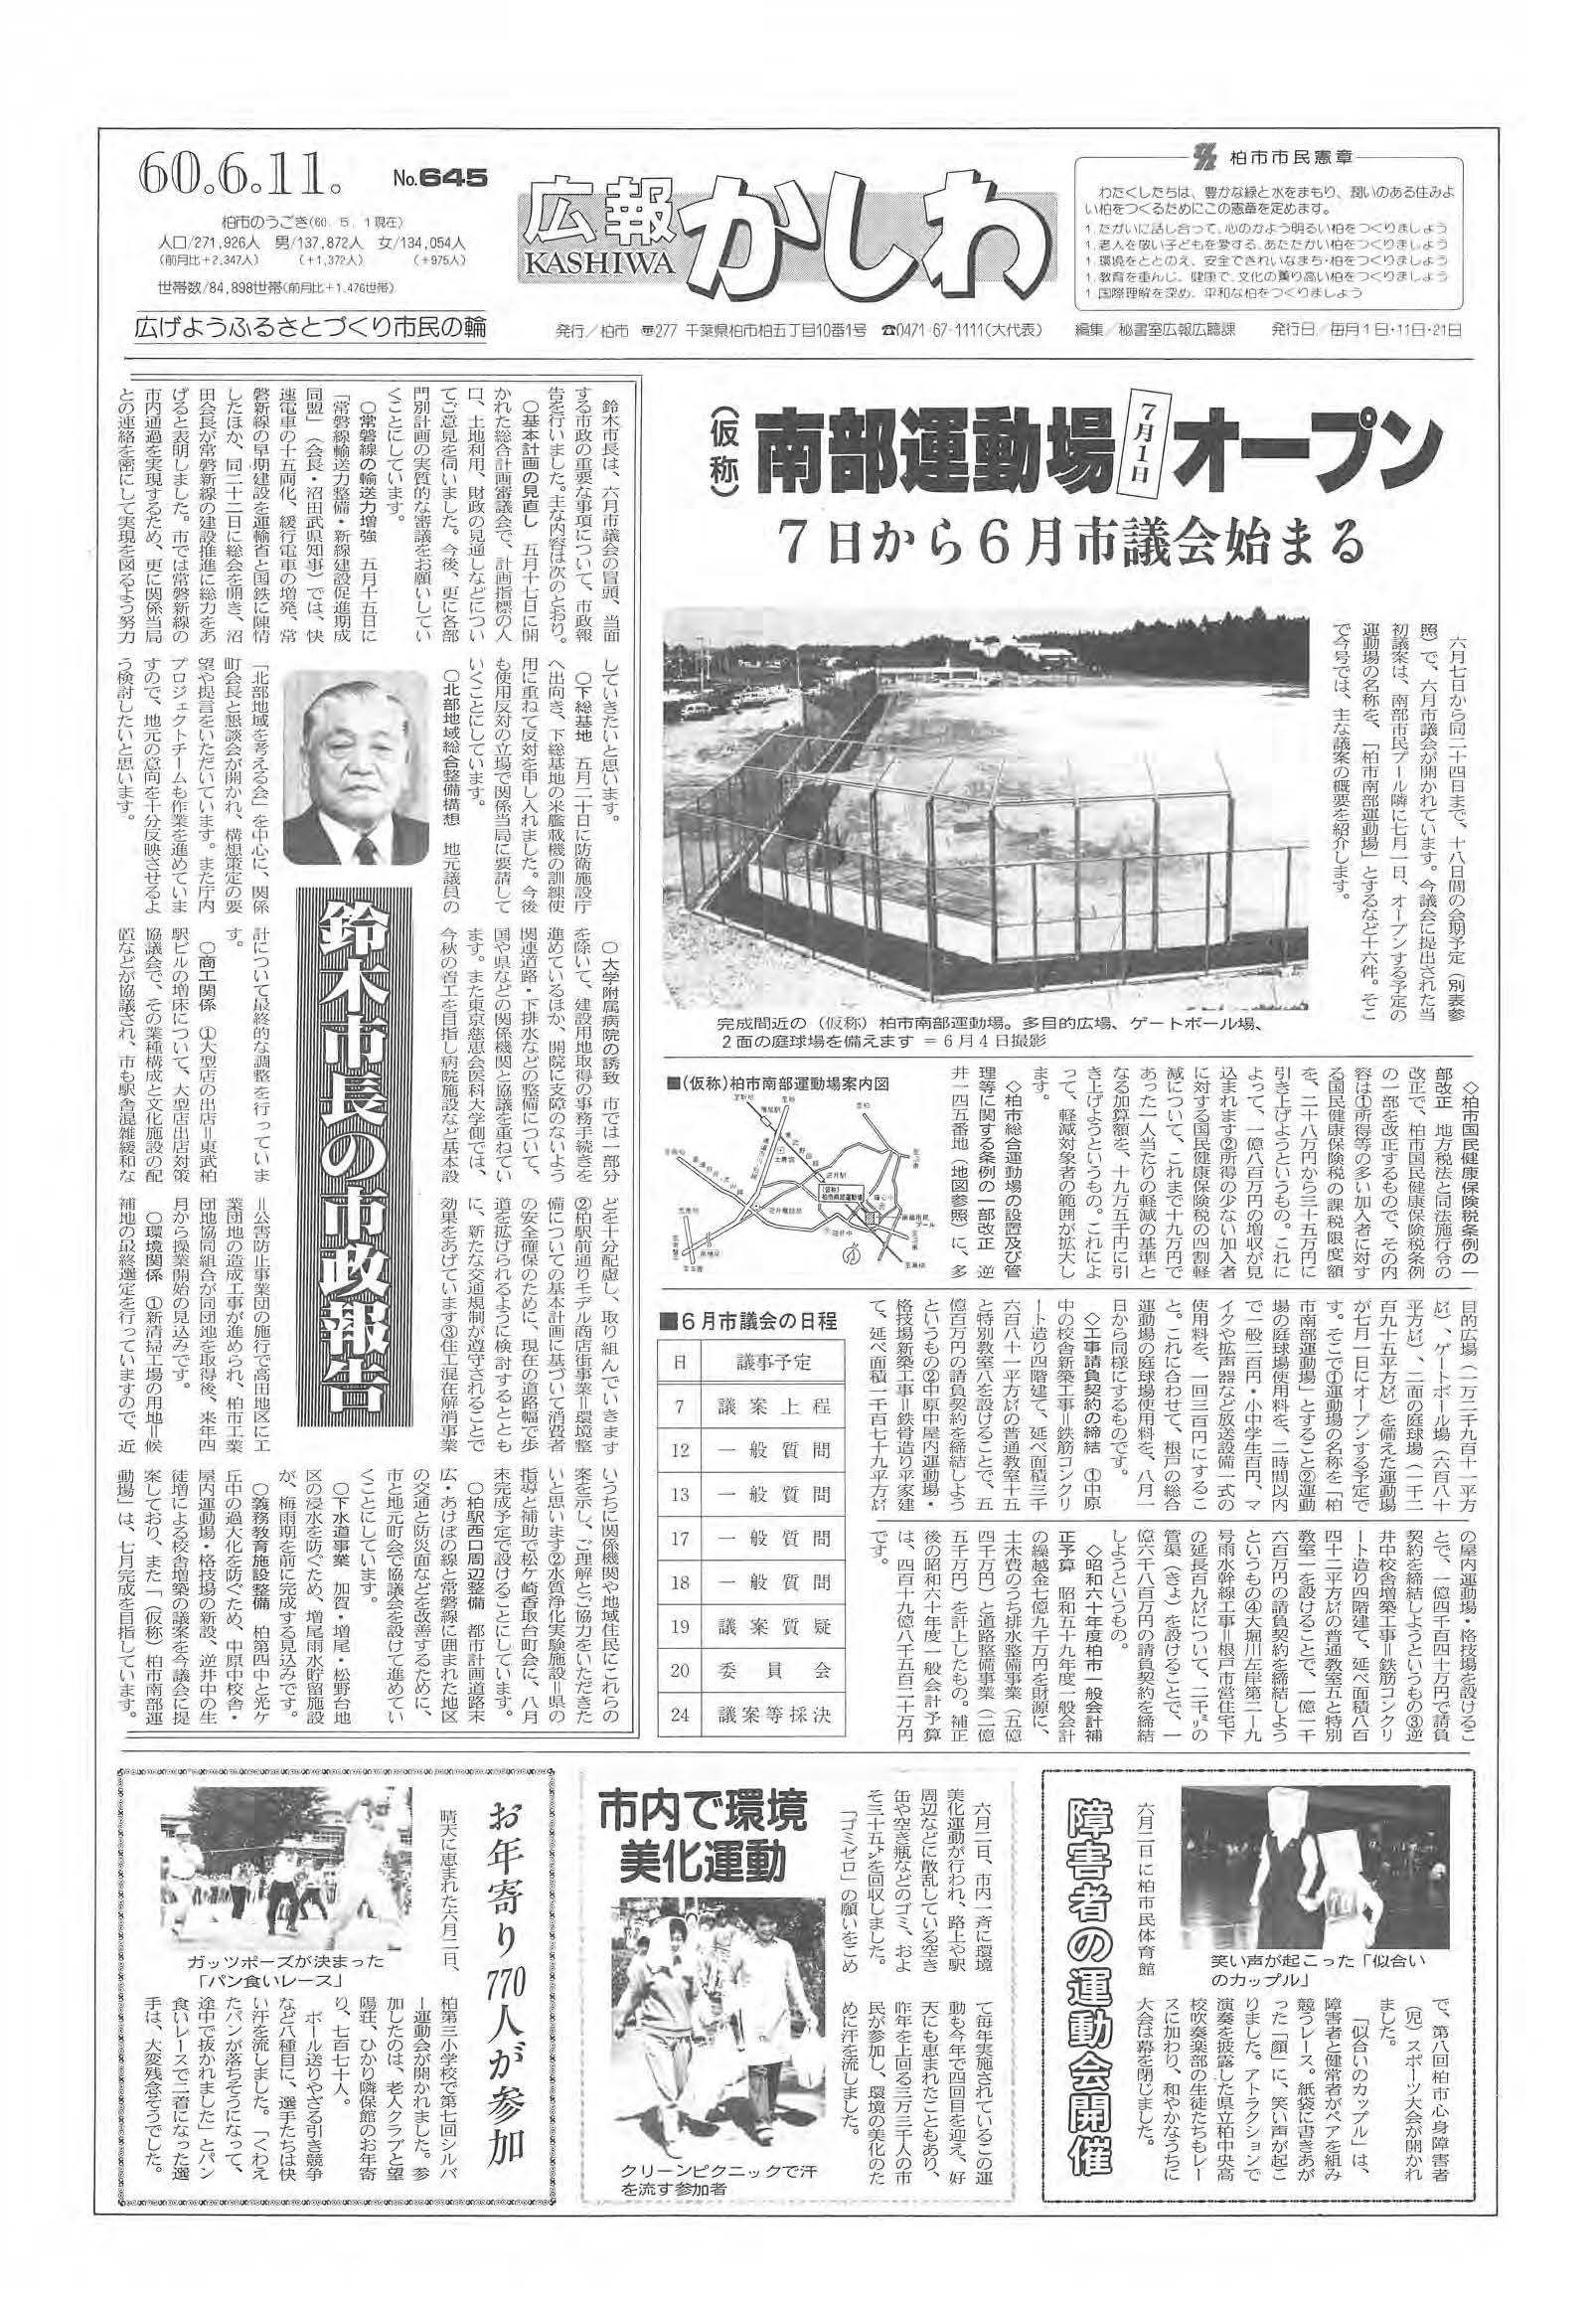 広報かしわ　昭和60年6月11日発行　645号